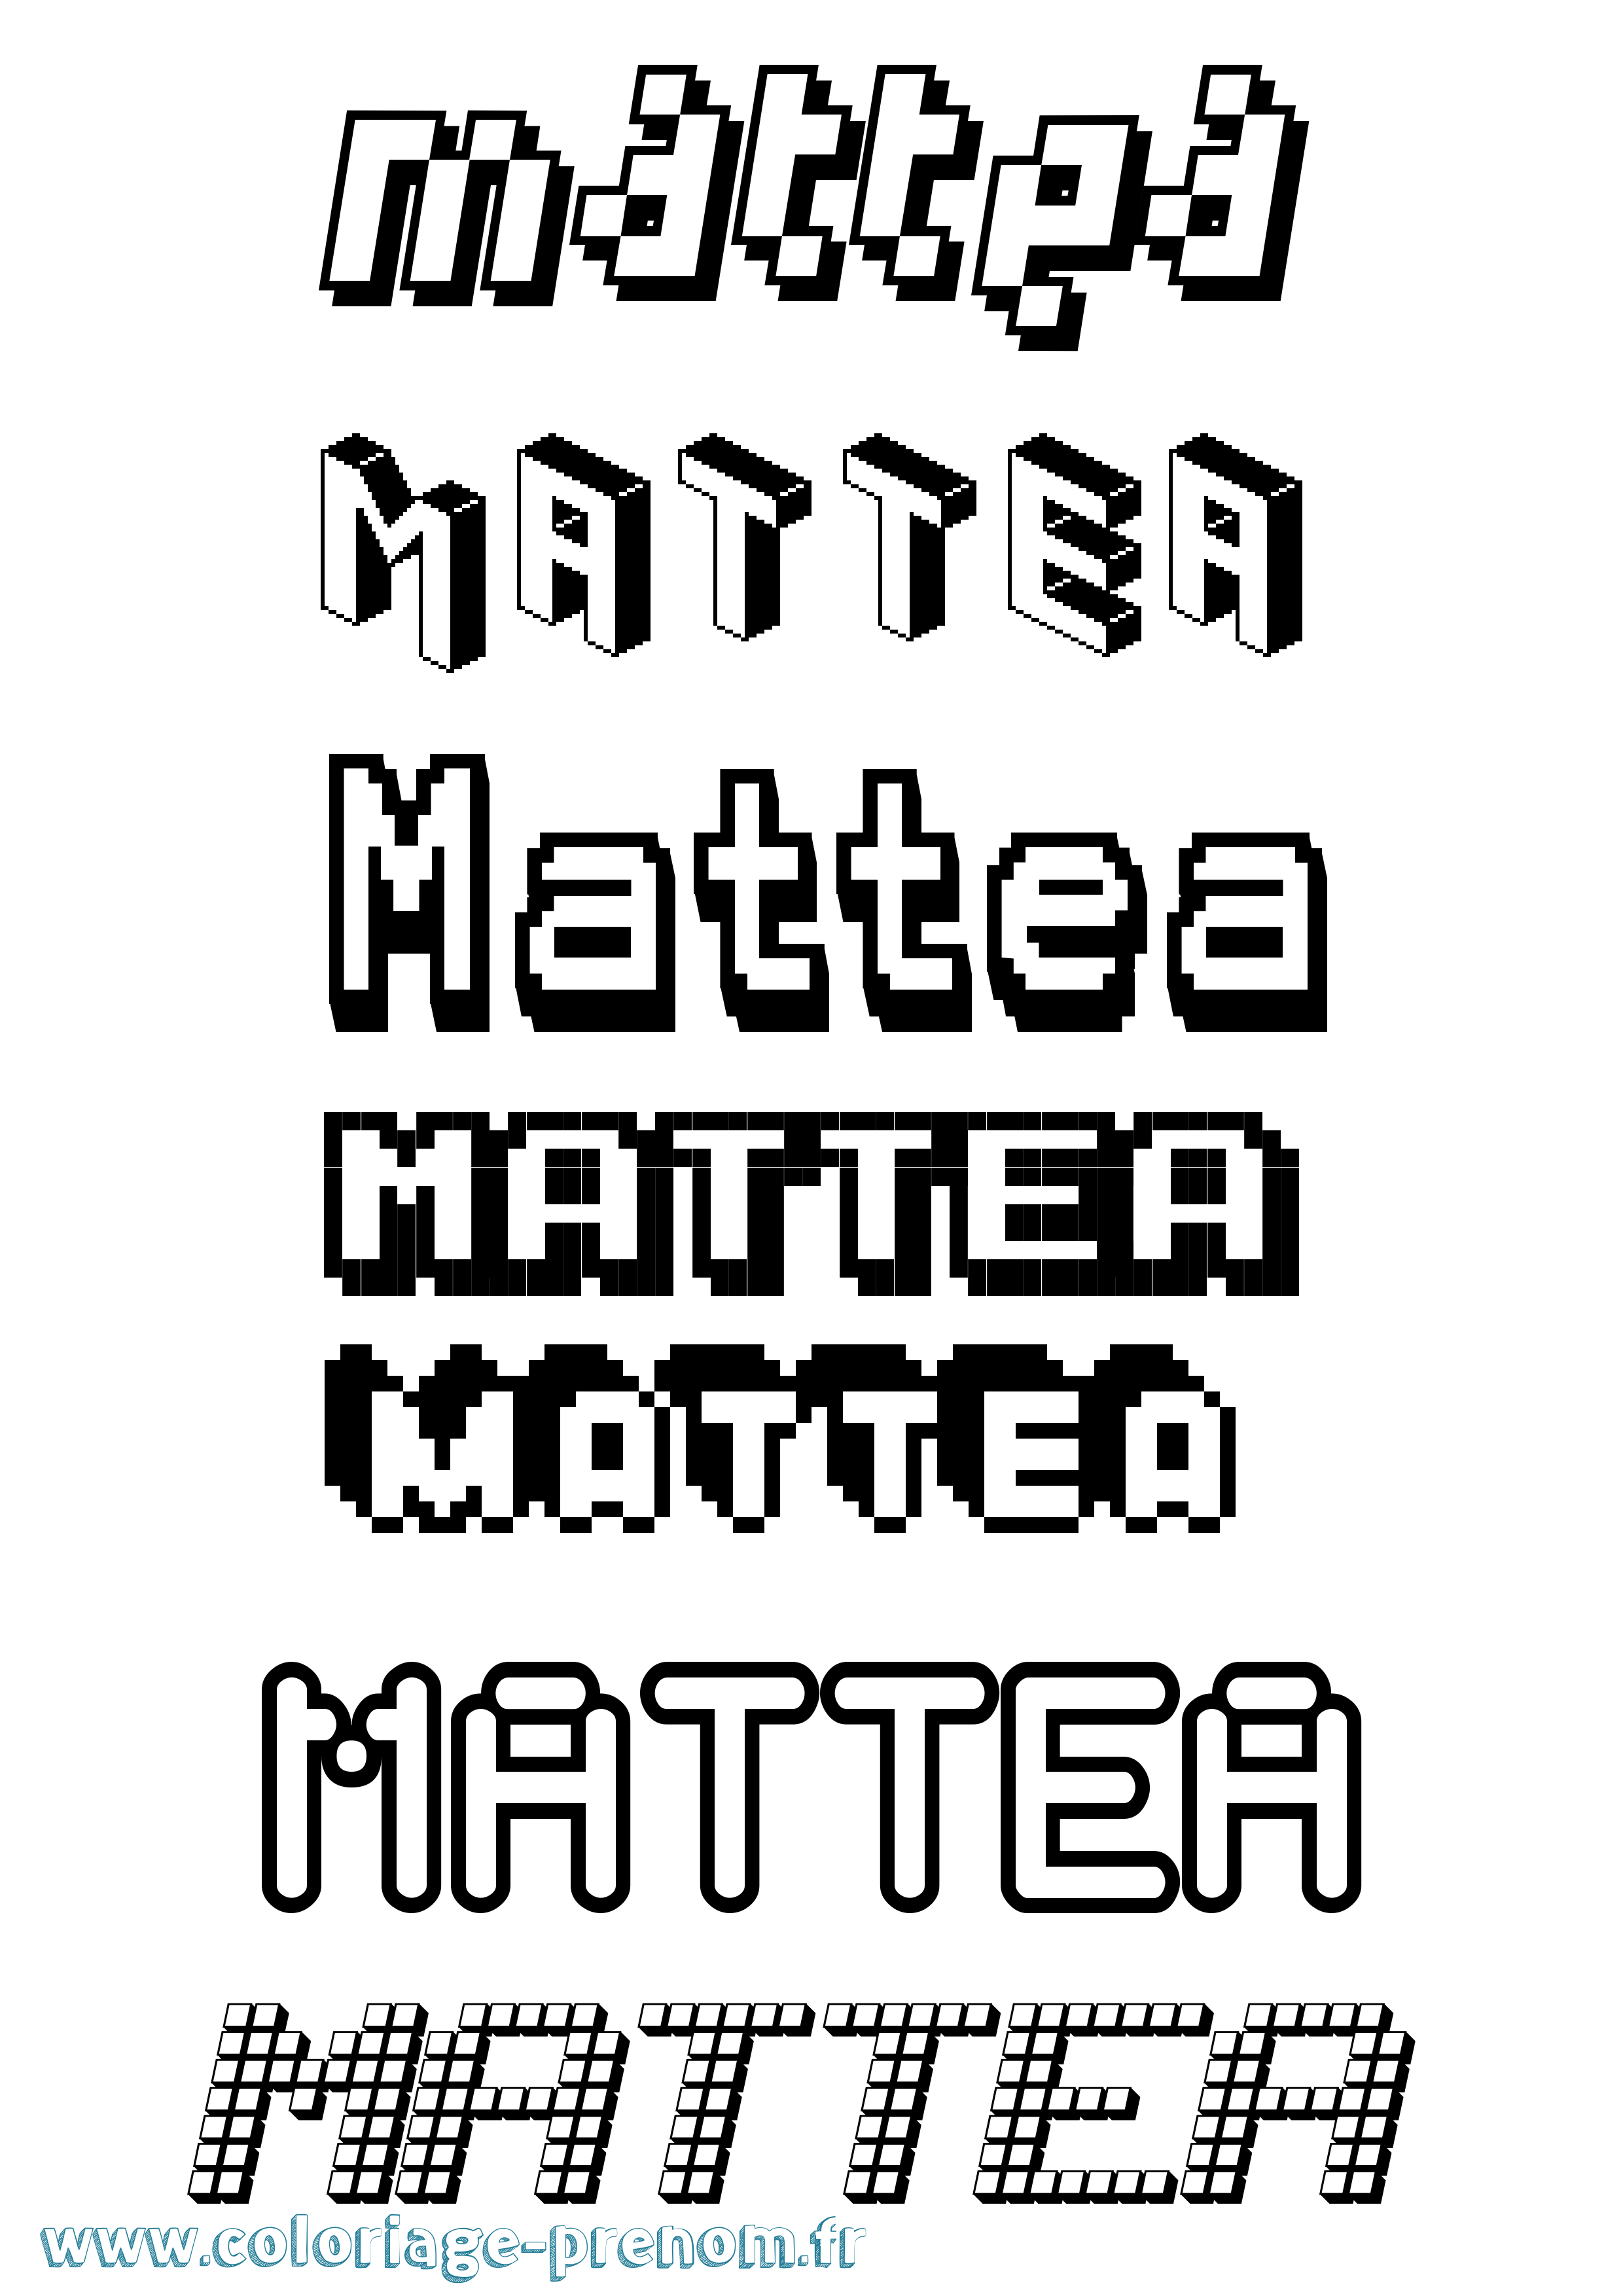 Coloriage prénom Mattea Pixel